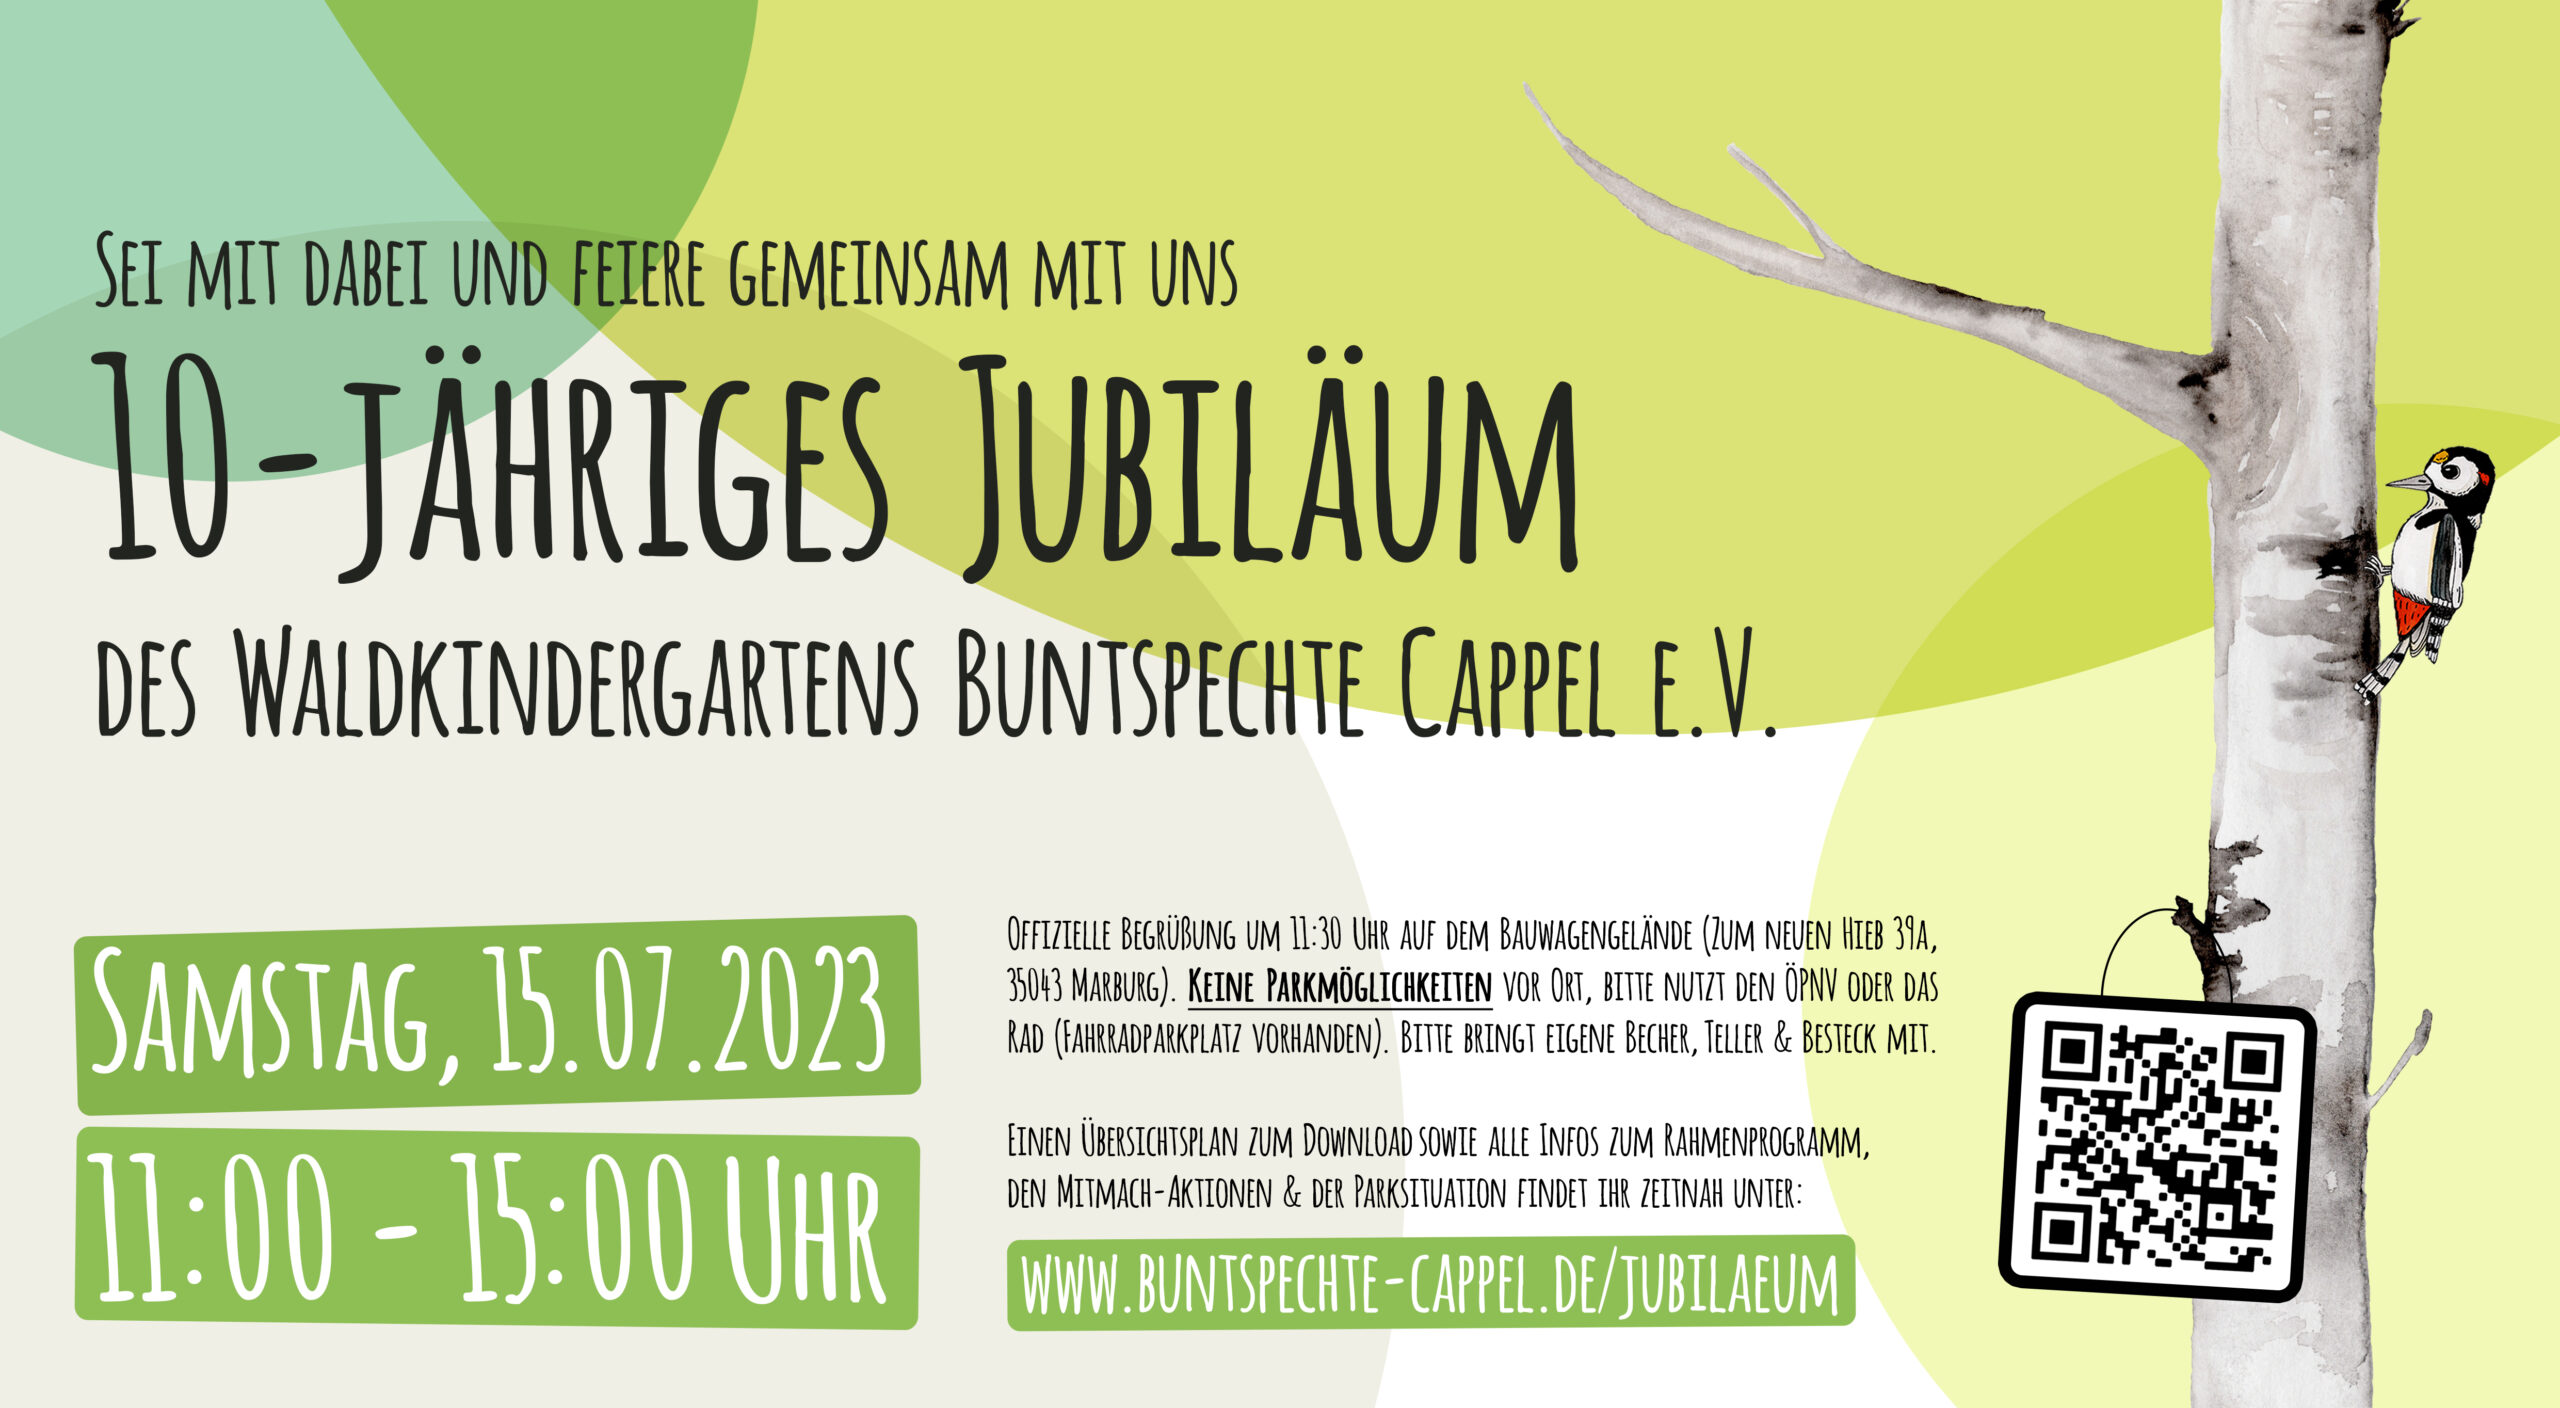 Einladung zum 10-jährigen Jubiläum des Waldkindergartens Buntspechte Cappel e.V.